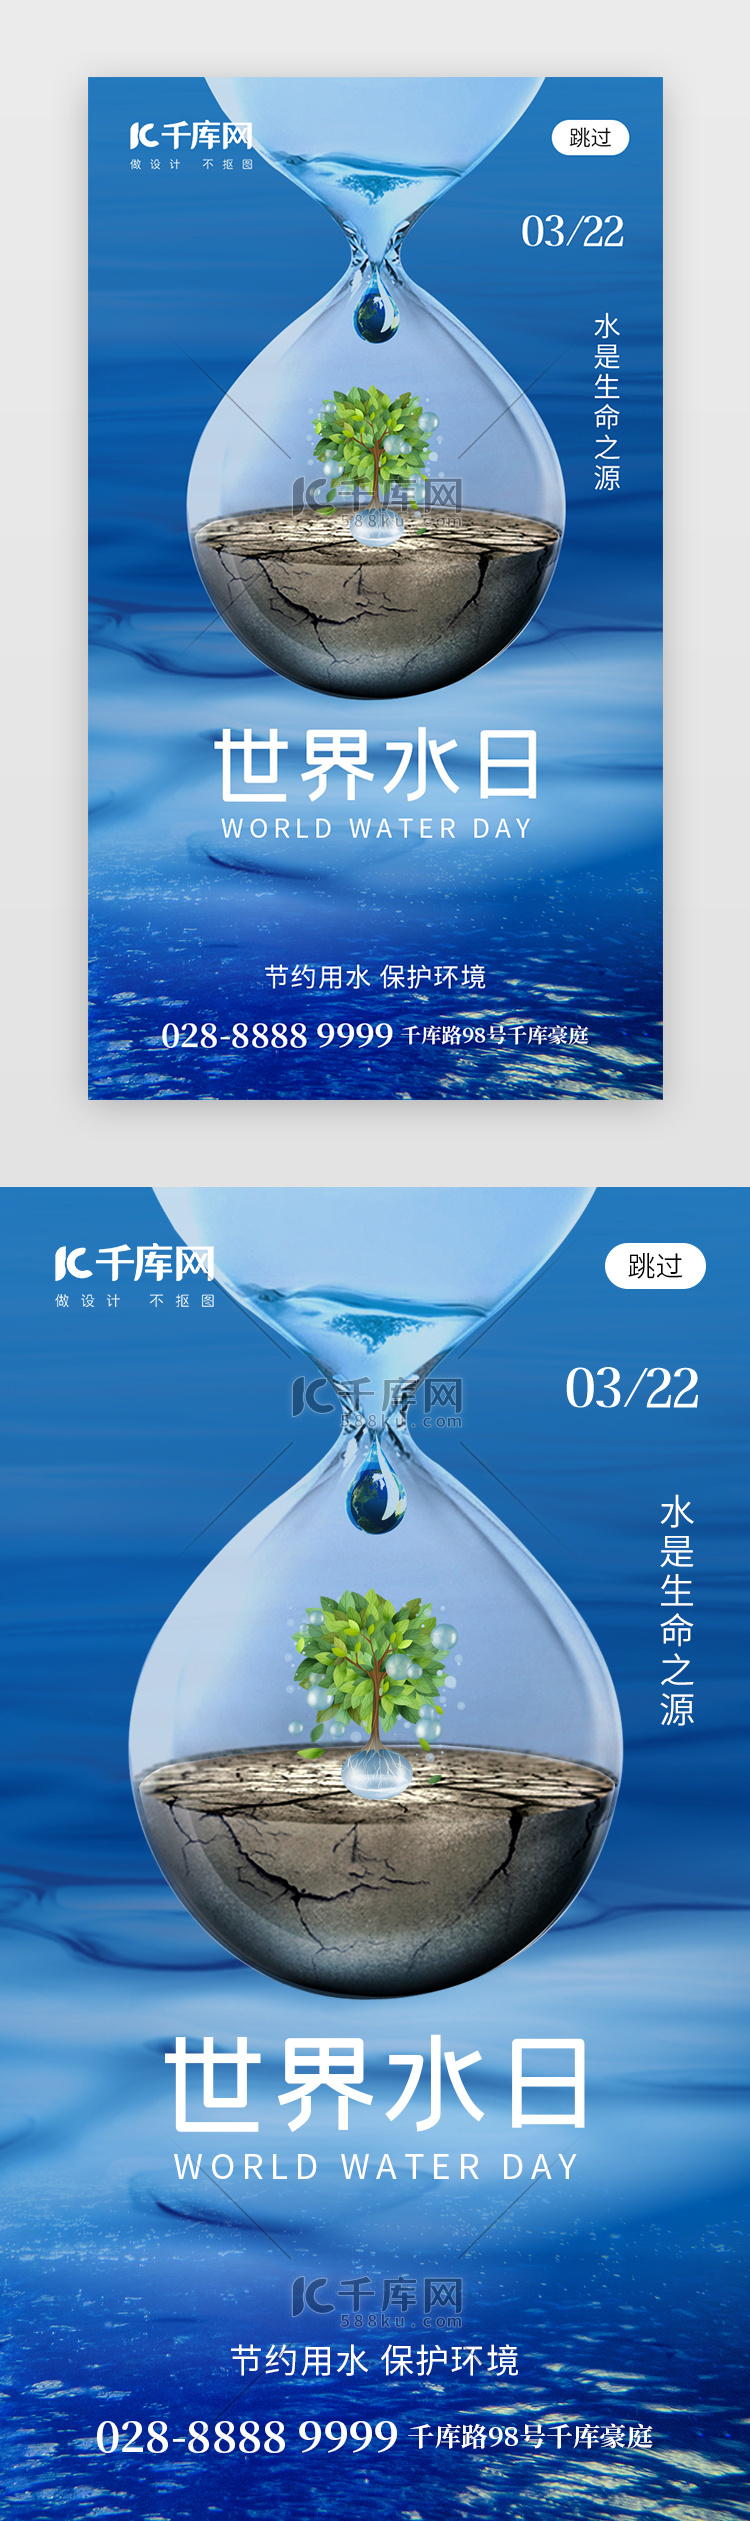 世界水日app闪屏创意蓝色沙漏